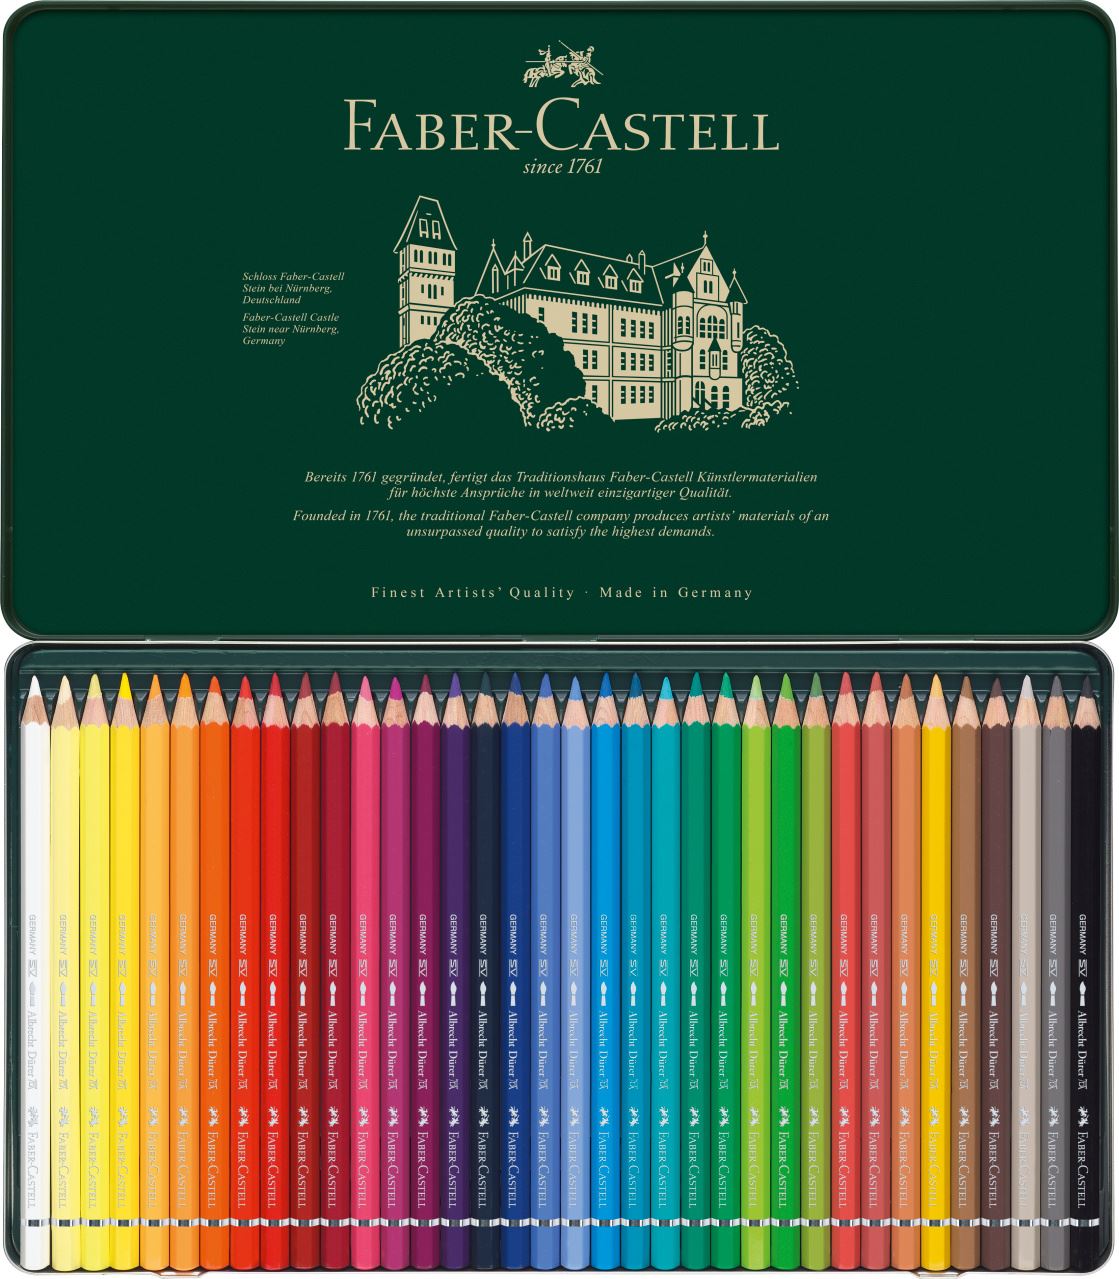 Faber-Castell - Crayons aquarellable Albrecht Dürer boîte métal de 36